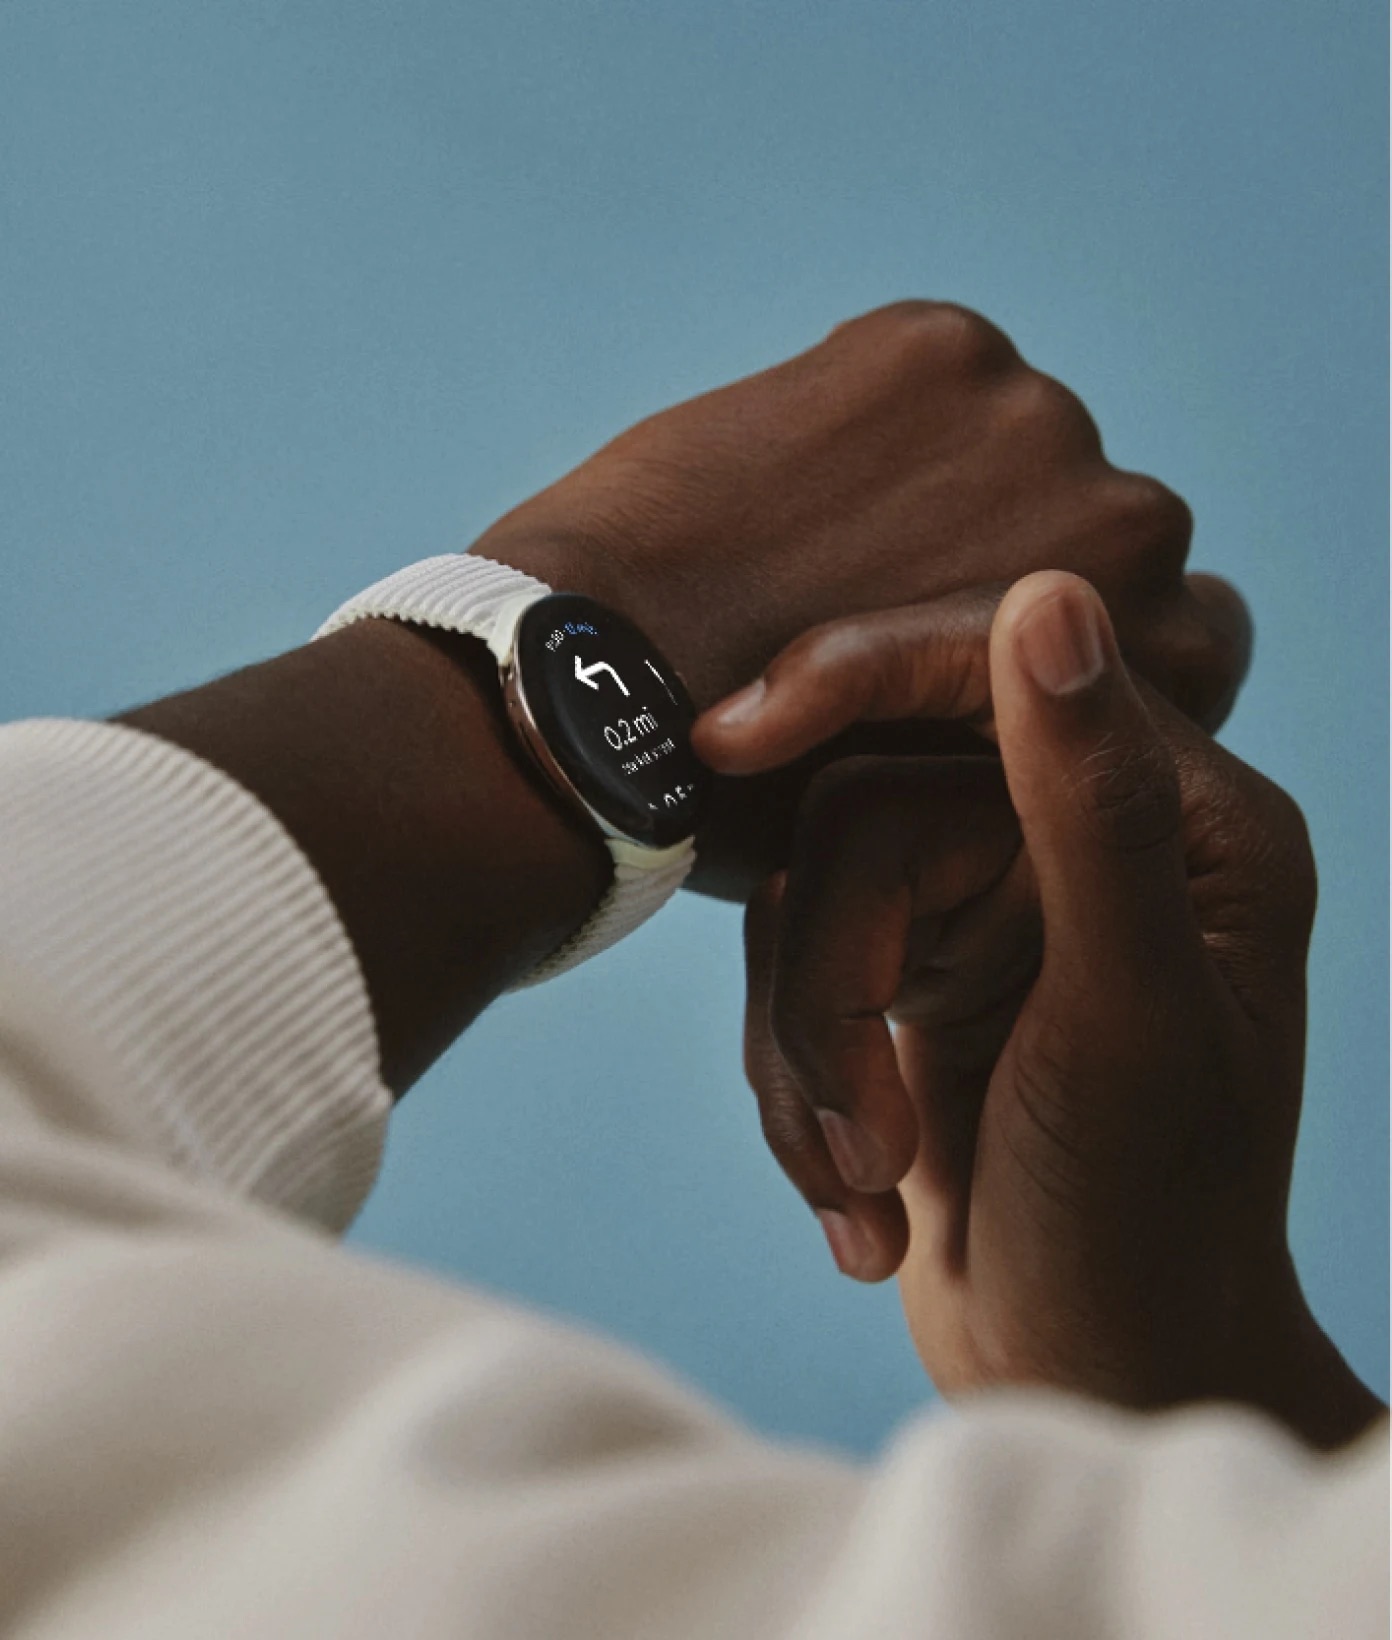 Google ra mắt smartwatch Pixel Watch với thiết kế đơn giản và nhiều tính năng sức khỏe